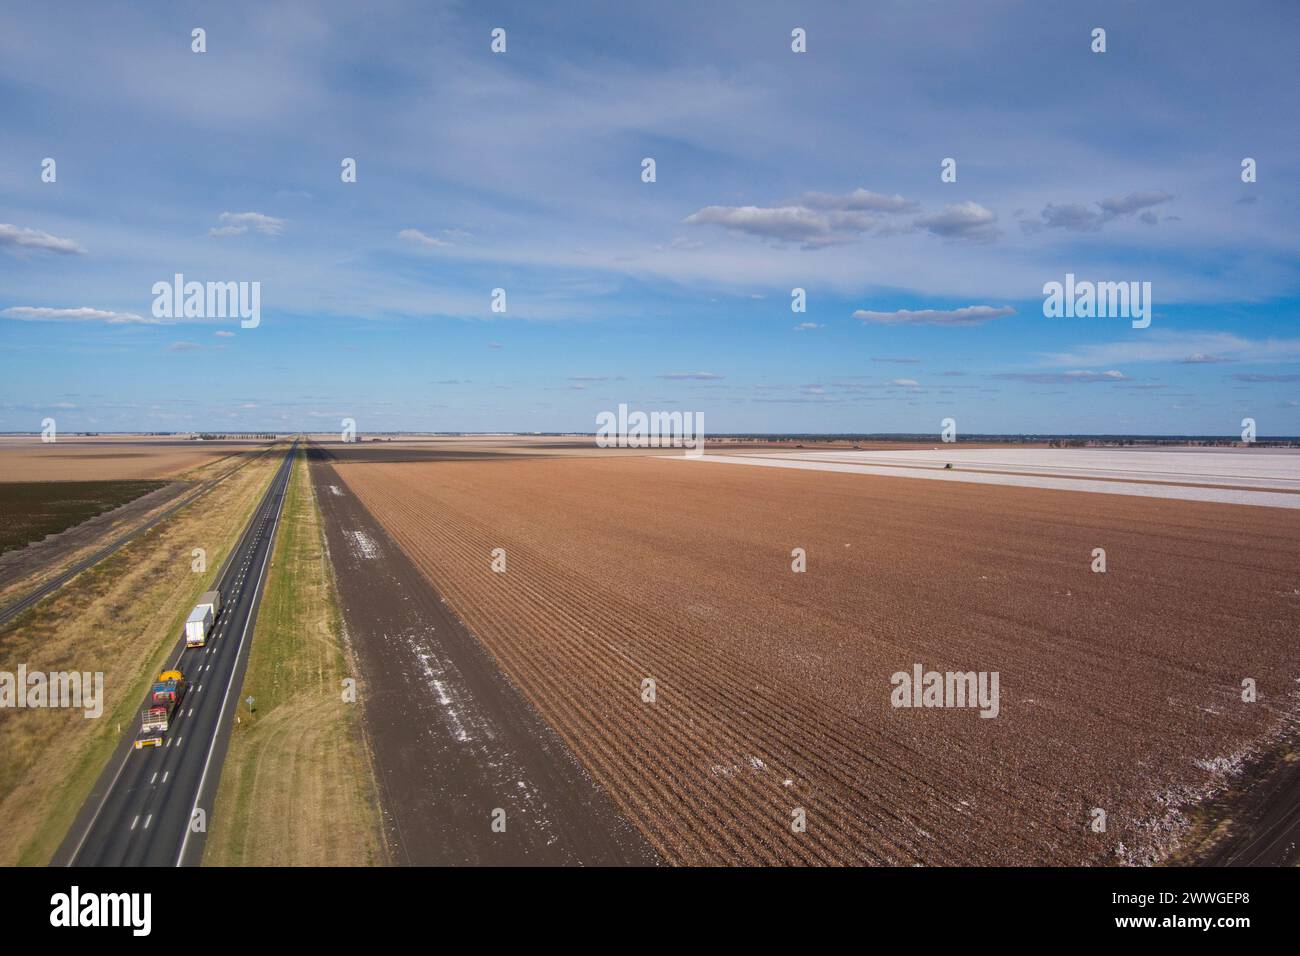 Luftlinie des Warrego Highway vorbei an Baumwollfeldern, die in der Nähe von Dalby Queensland Australien geerntet werden Stockfoto